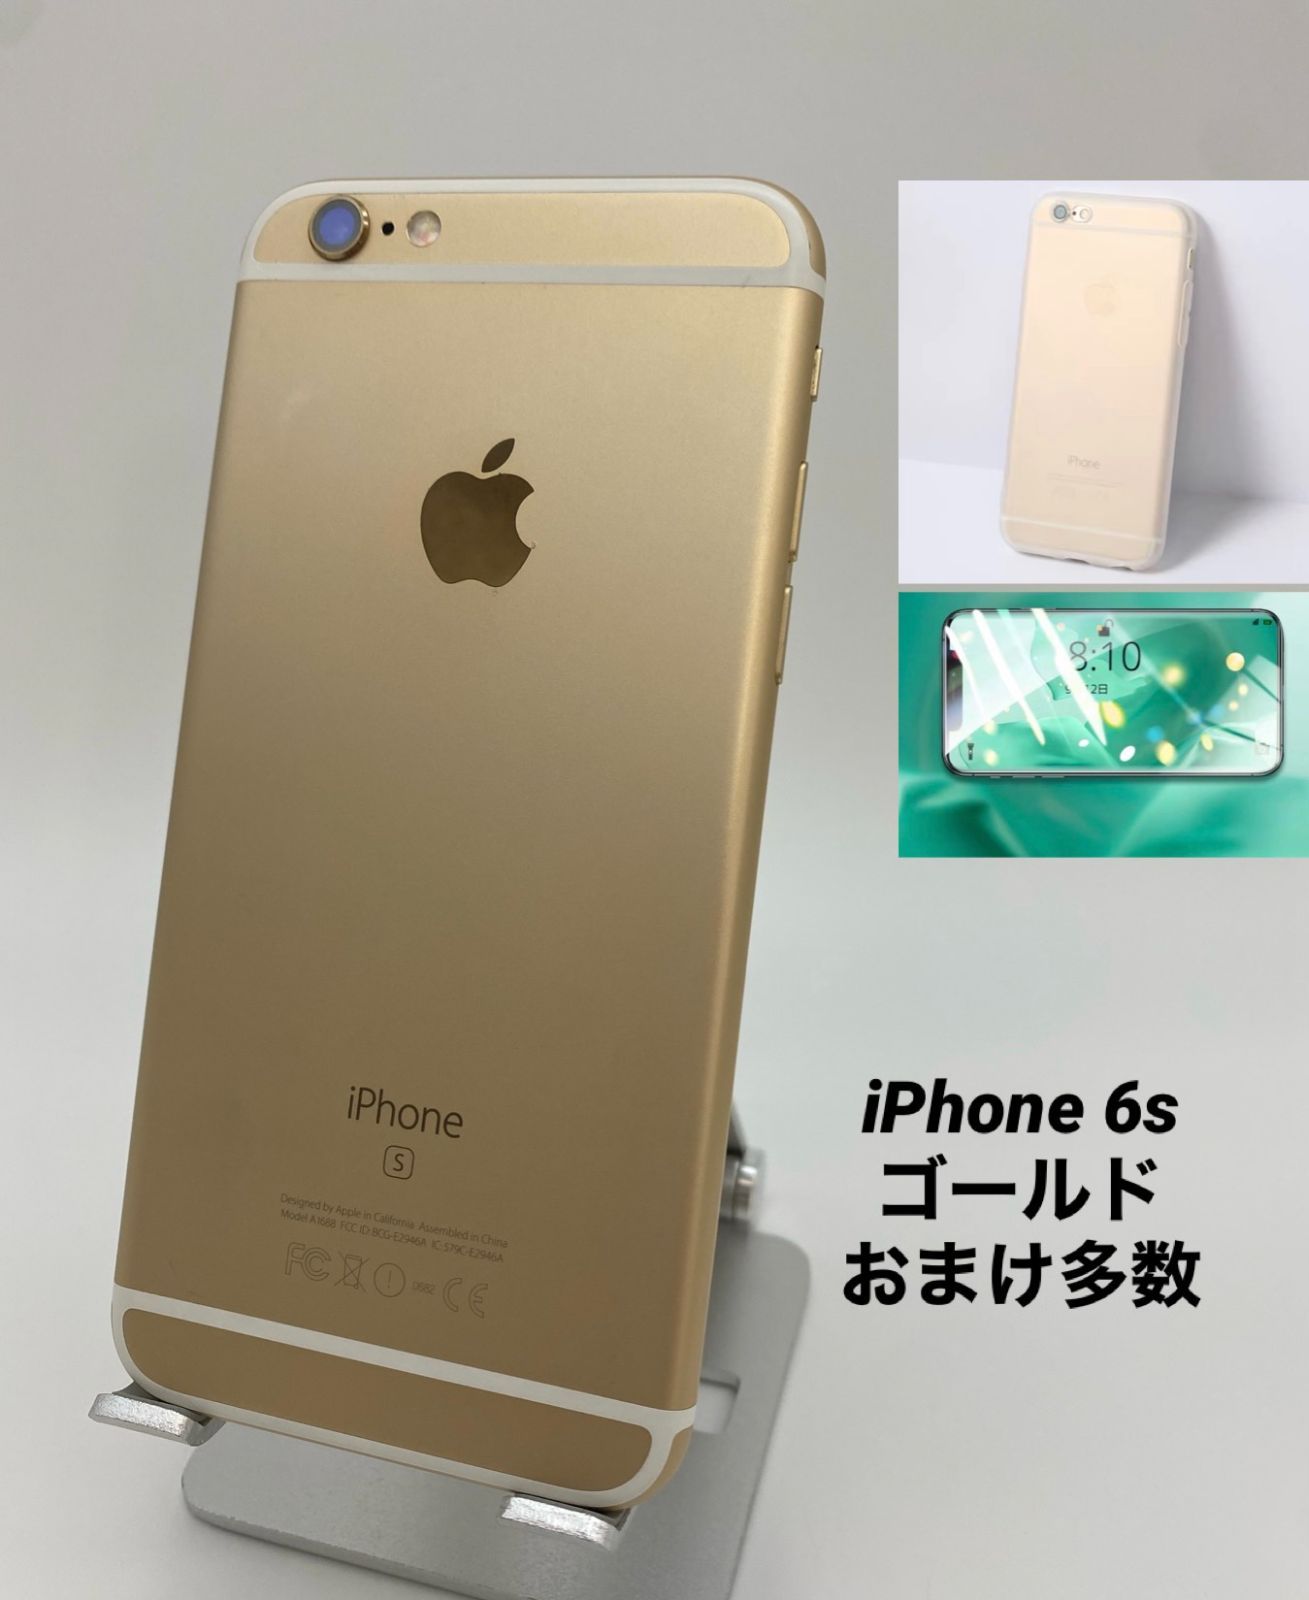 iPhone 6 auゴールド 64GB - スマートフォン本体